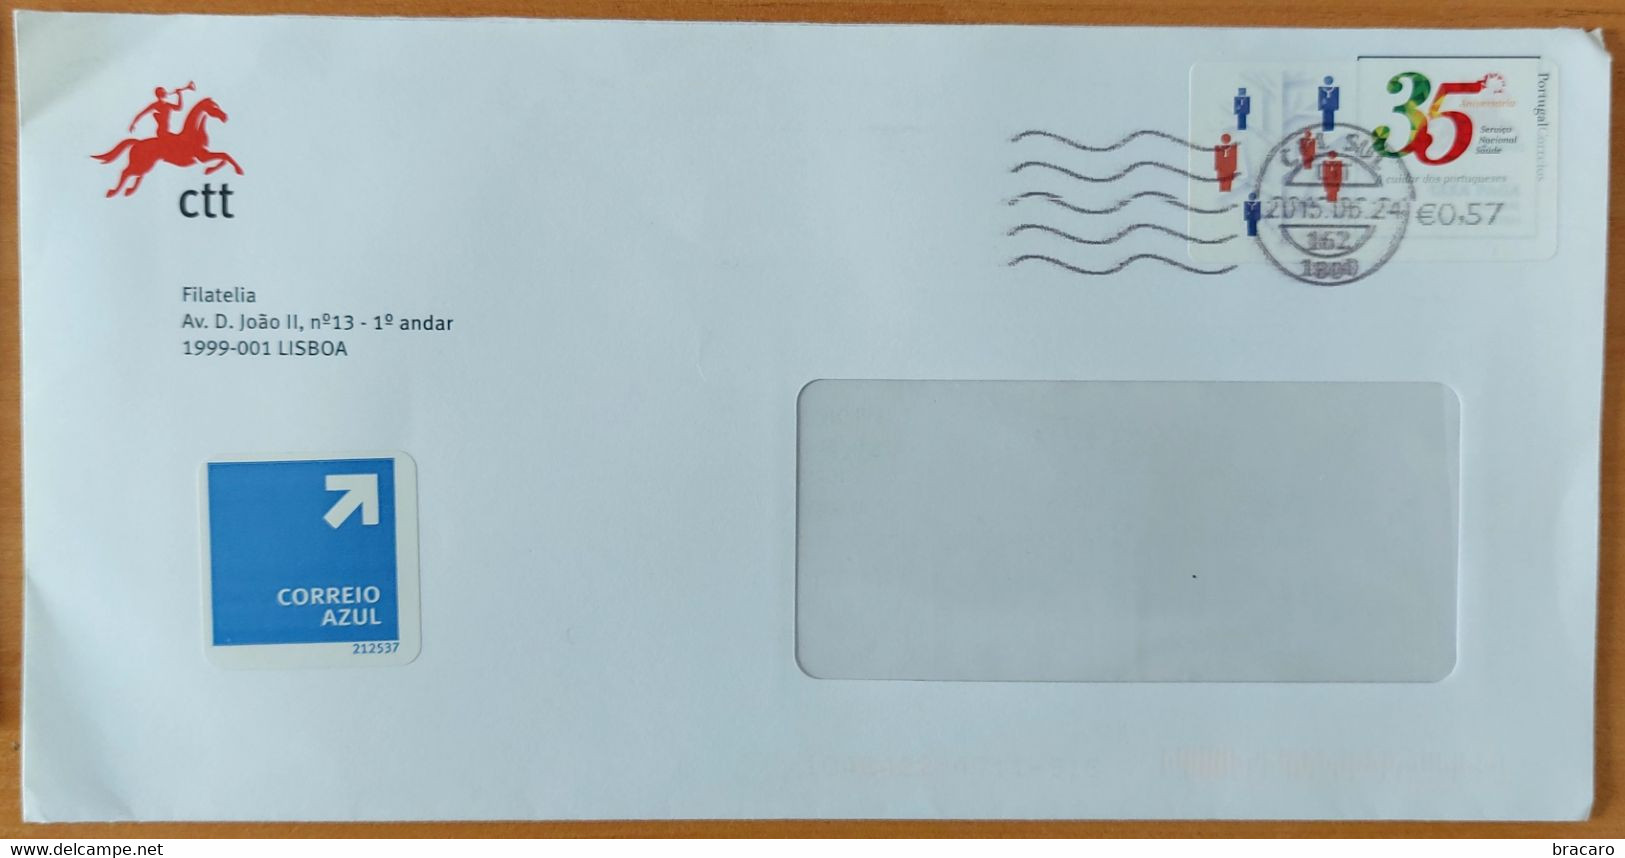 PORTUGAL - Cover - ATM Etiqueta 35º ANIV. SERVIÇO NACIONAL DE SAÚDE - Cancel / Streamer (flâmula) CPL SUL - 2015 - Briefe U. Dokumente